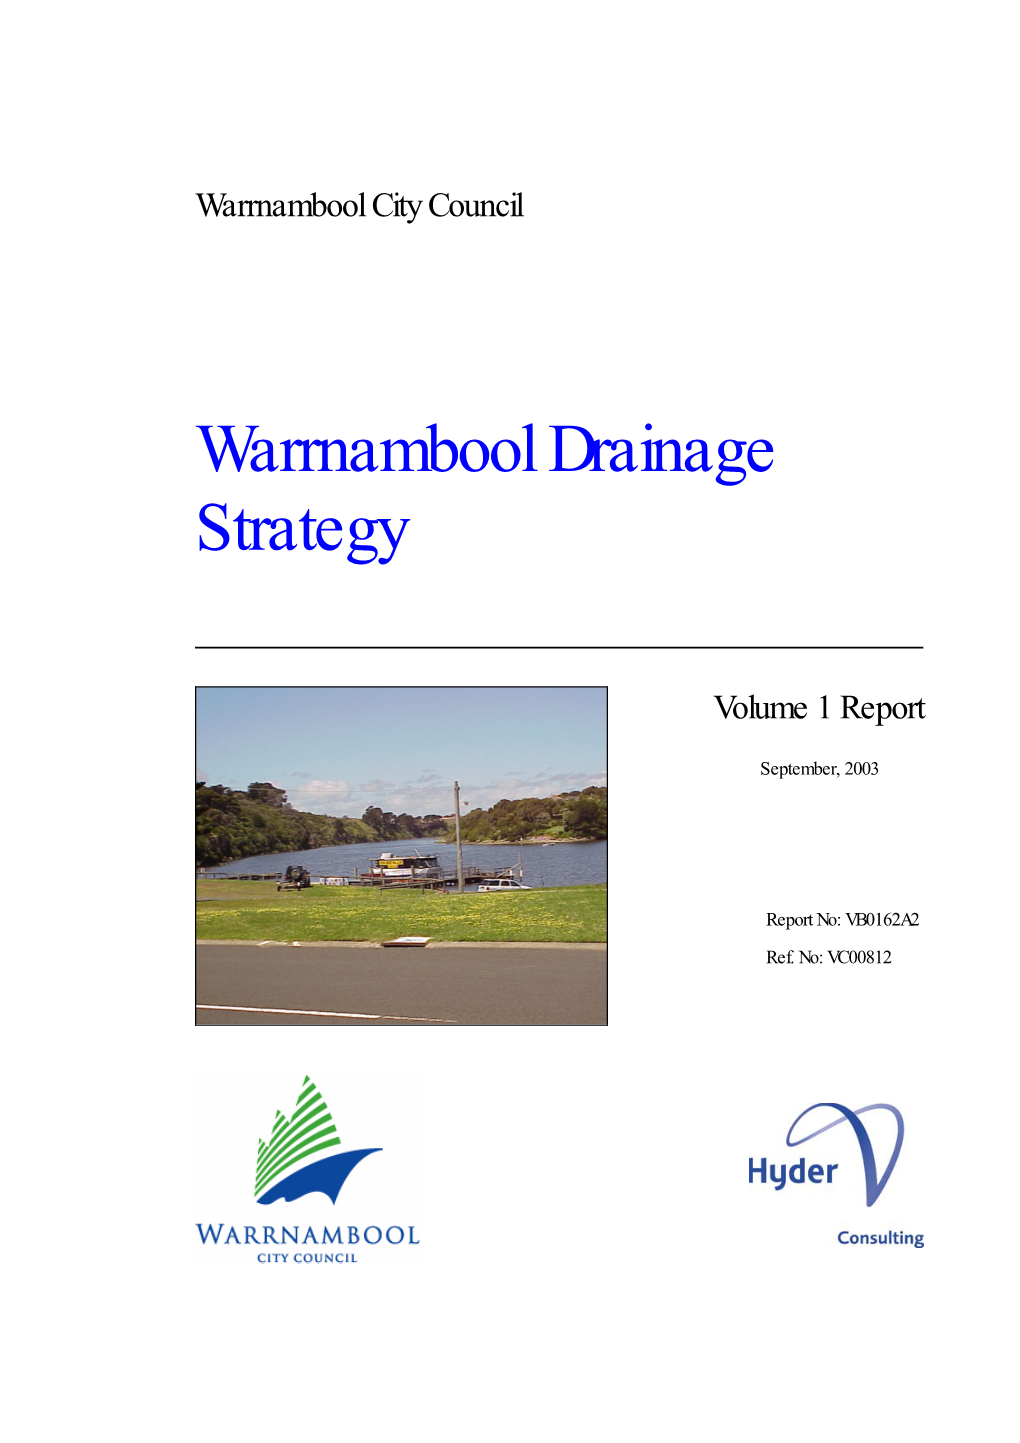 Warrnambool Drainage Strategy